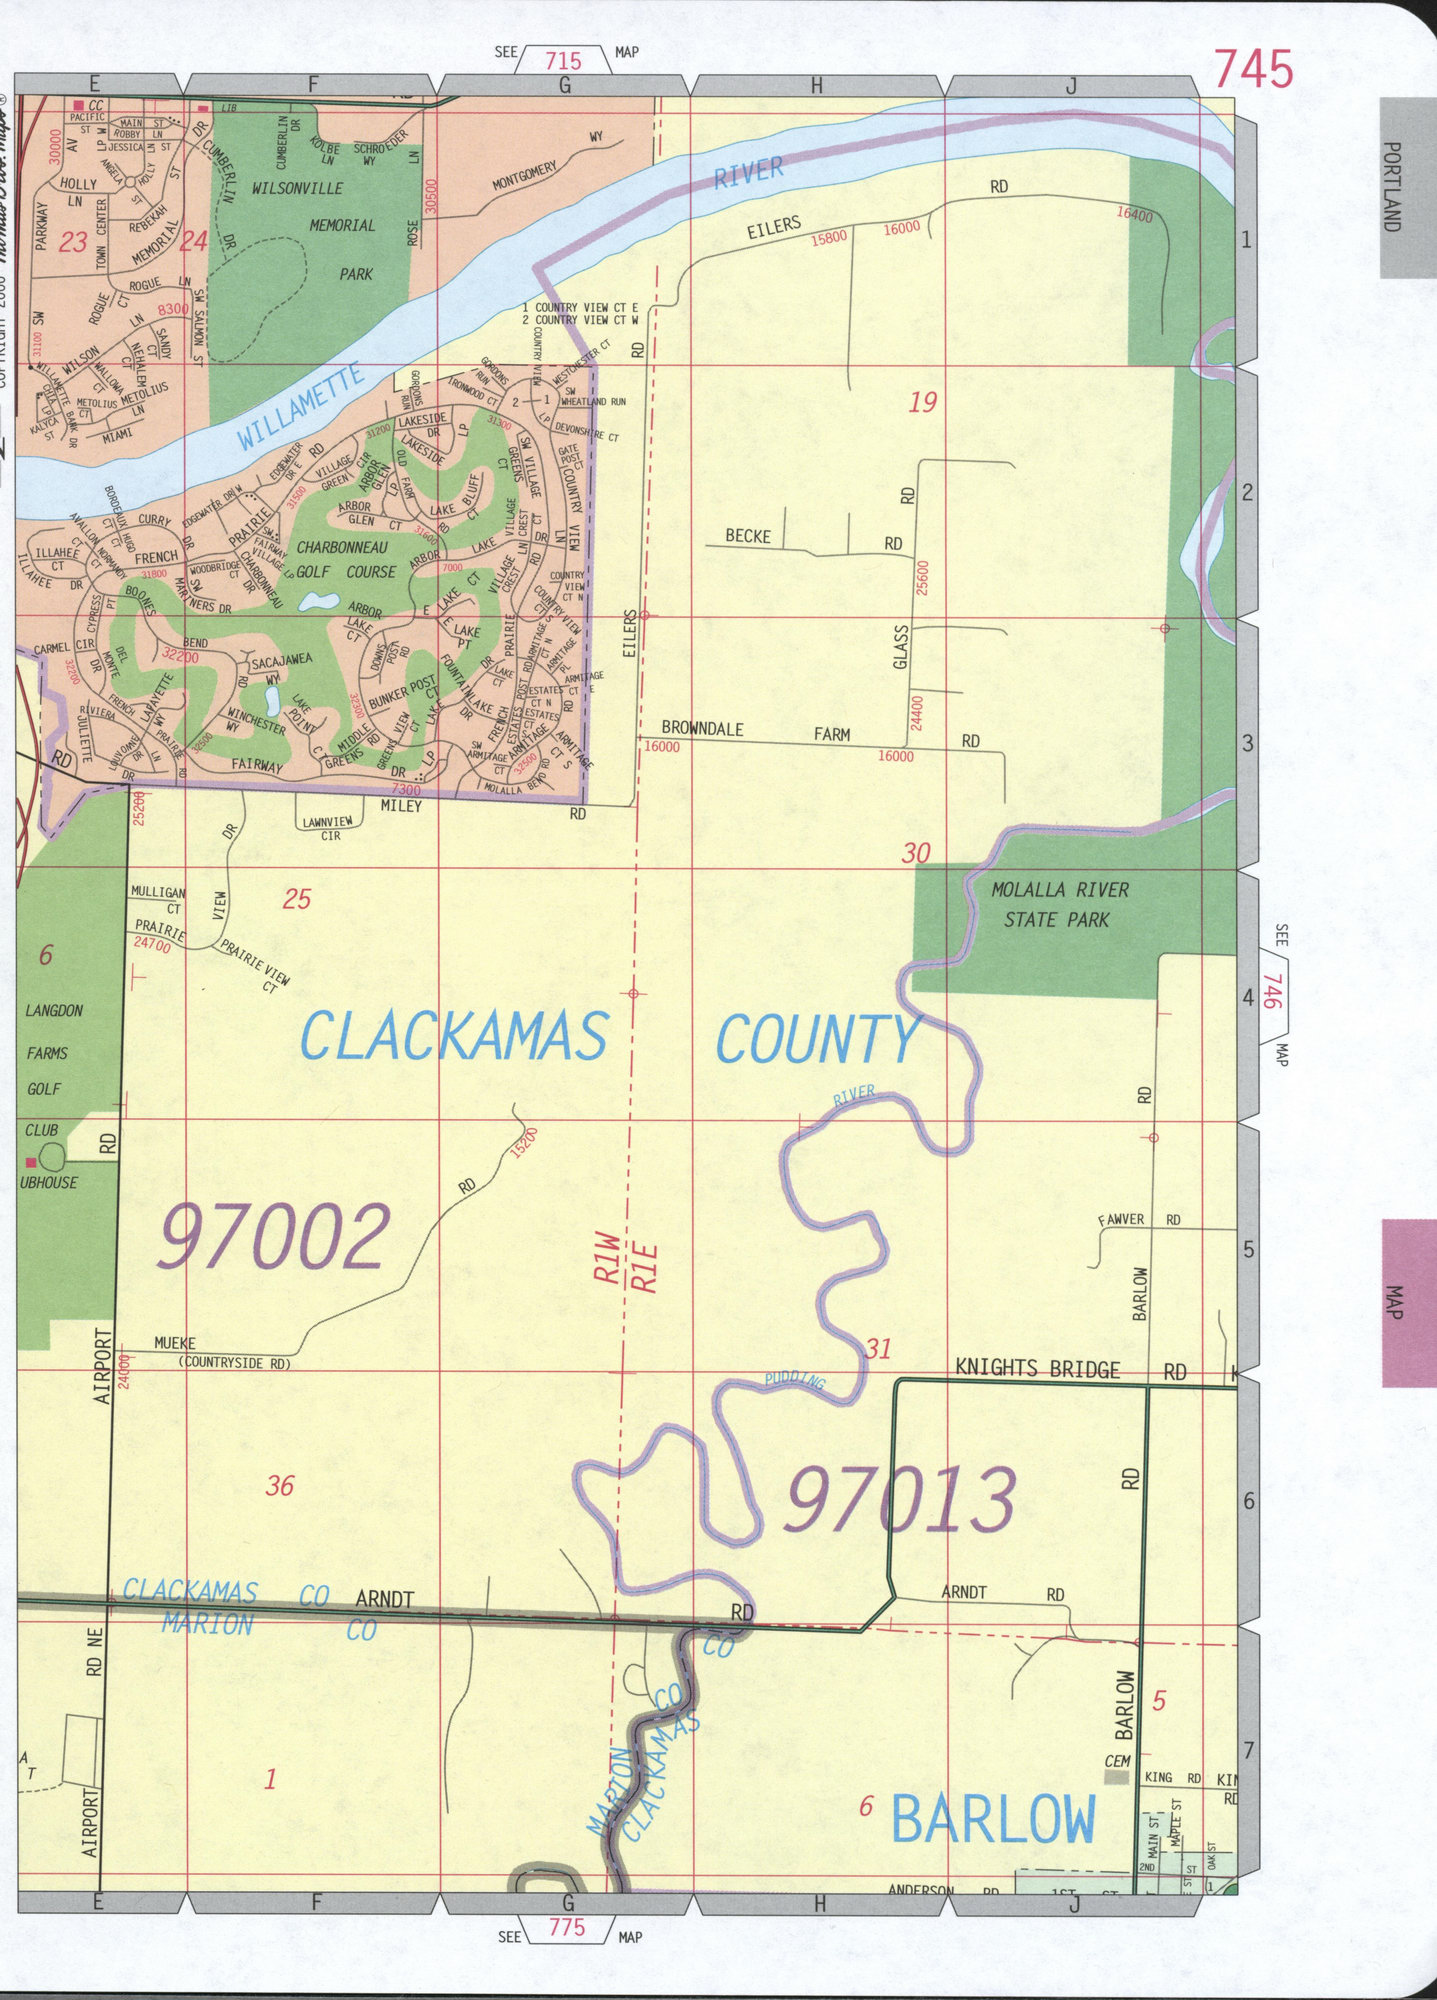 Wilsonville city map detailed